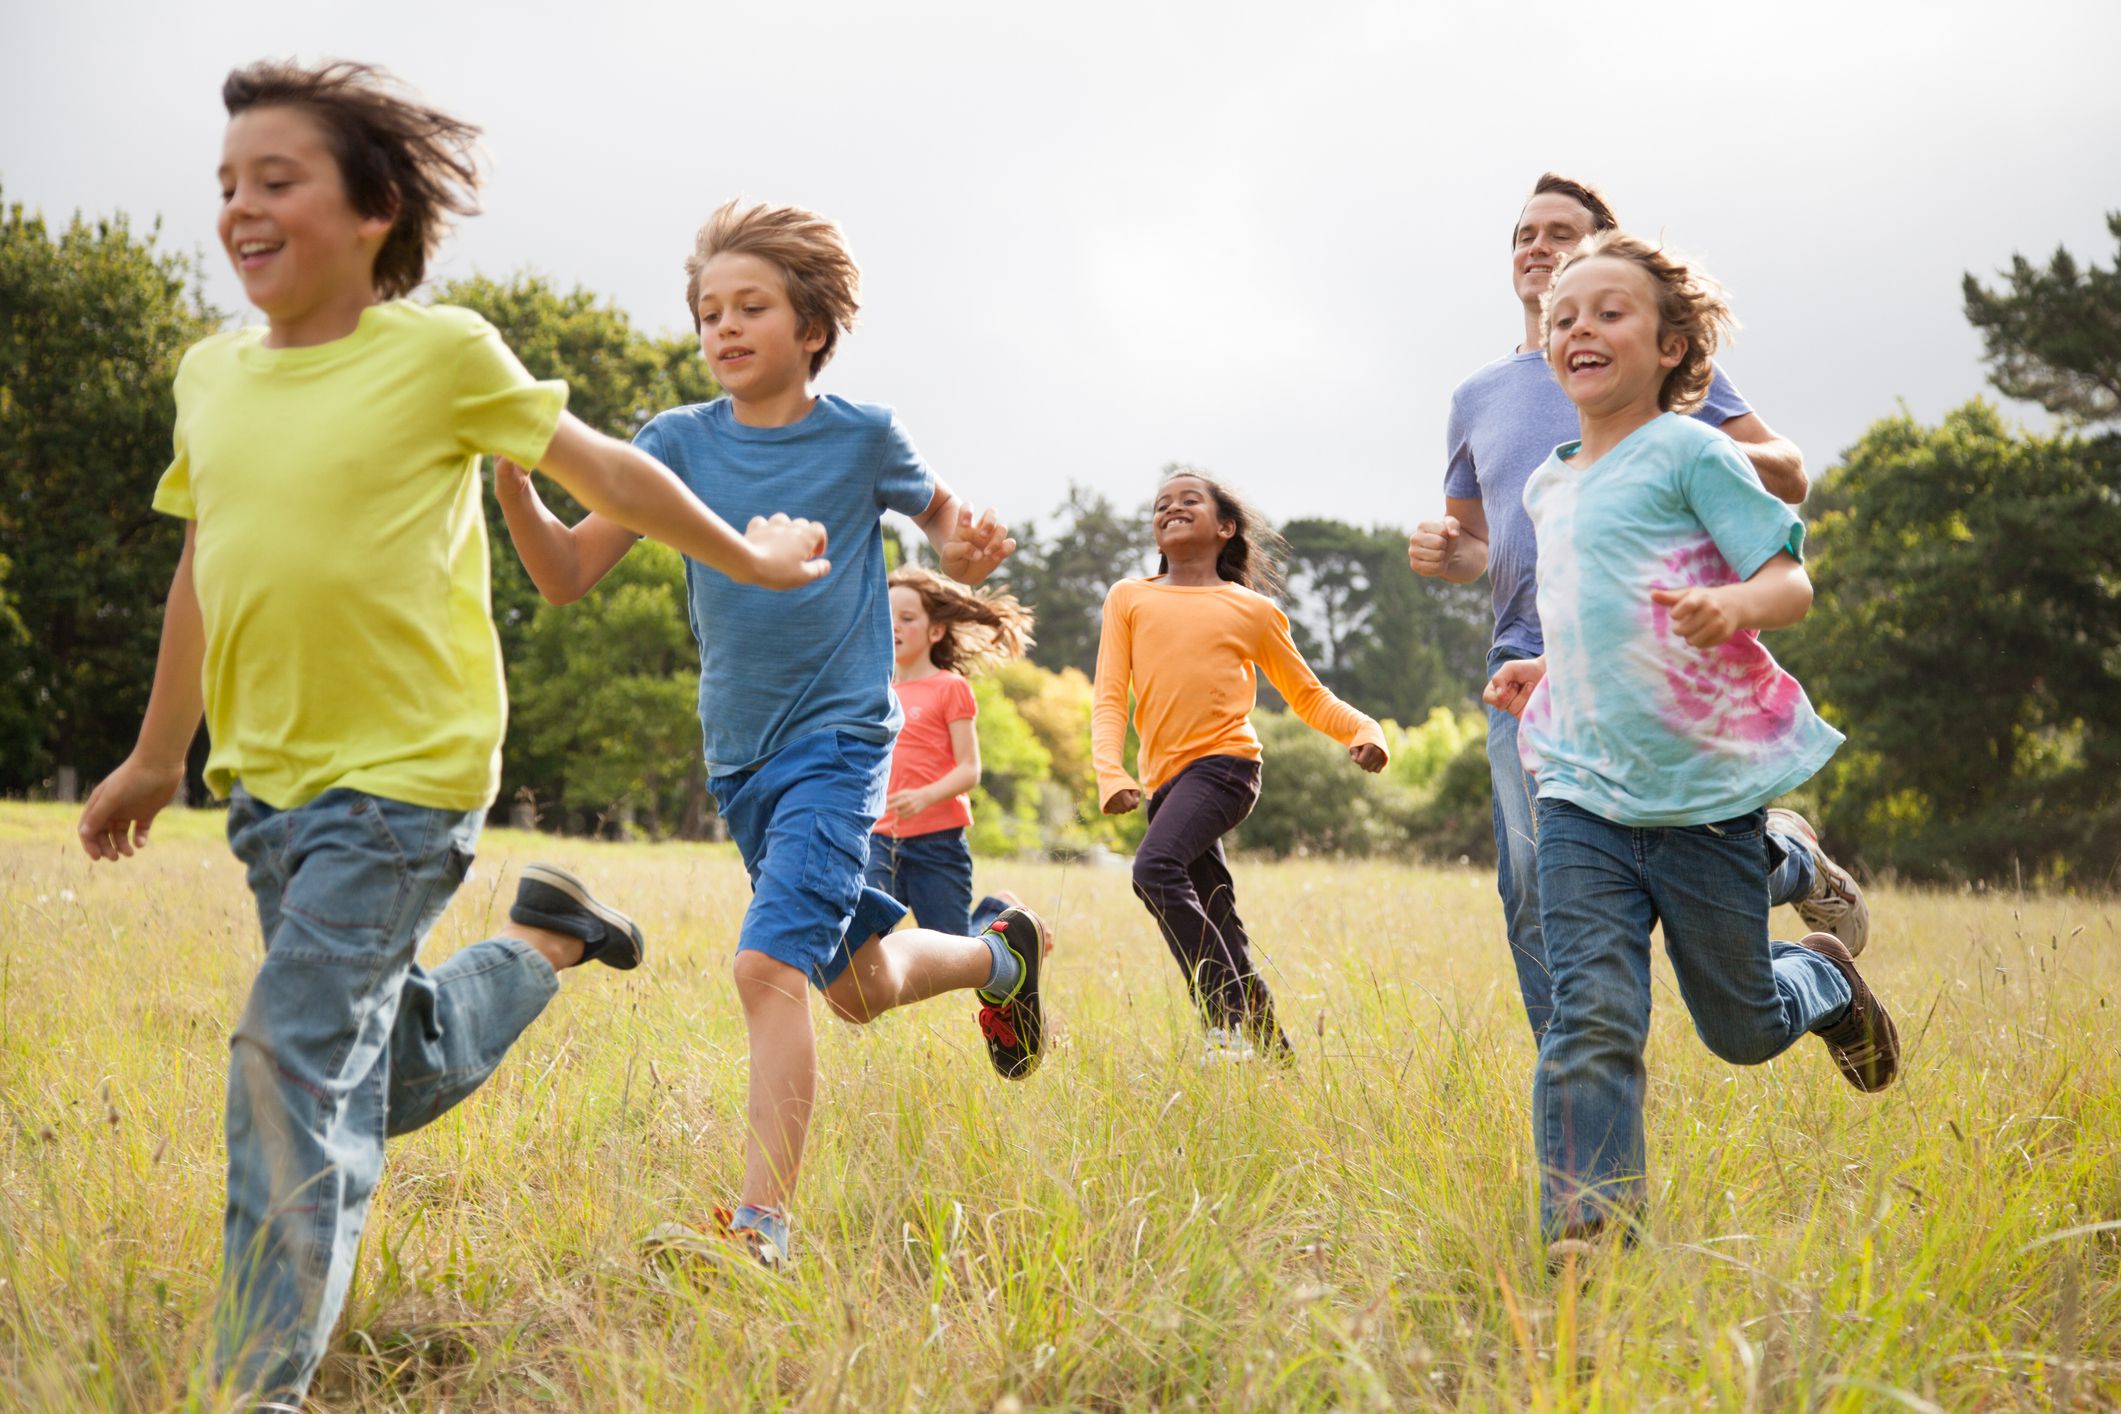 Aan Vervolg onderwijzen Benefits of Children Playing Outdoors - California Business Journal